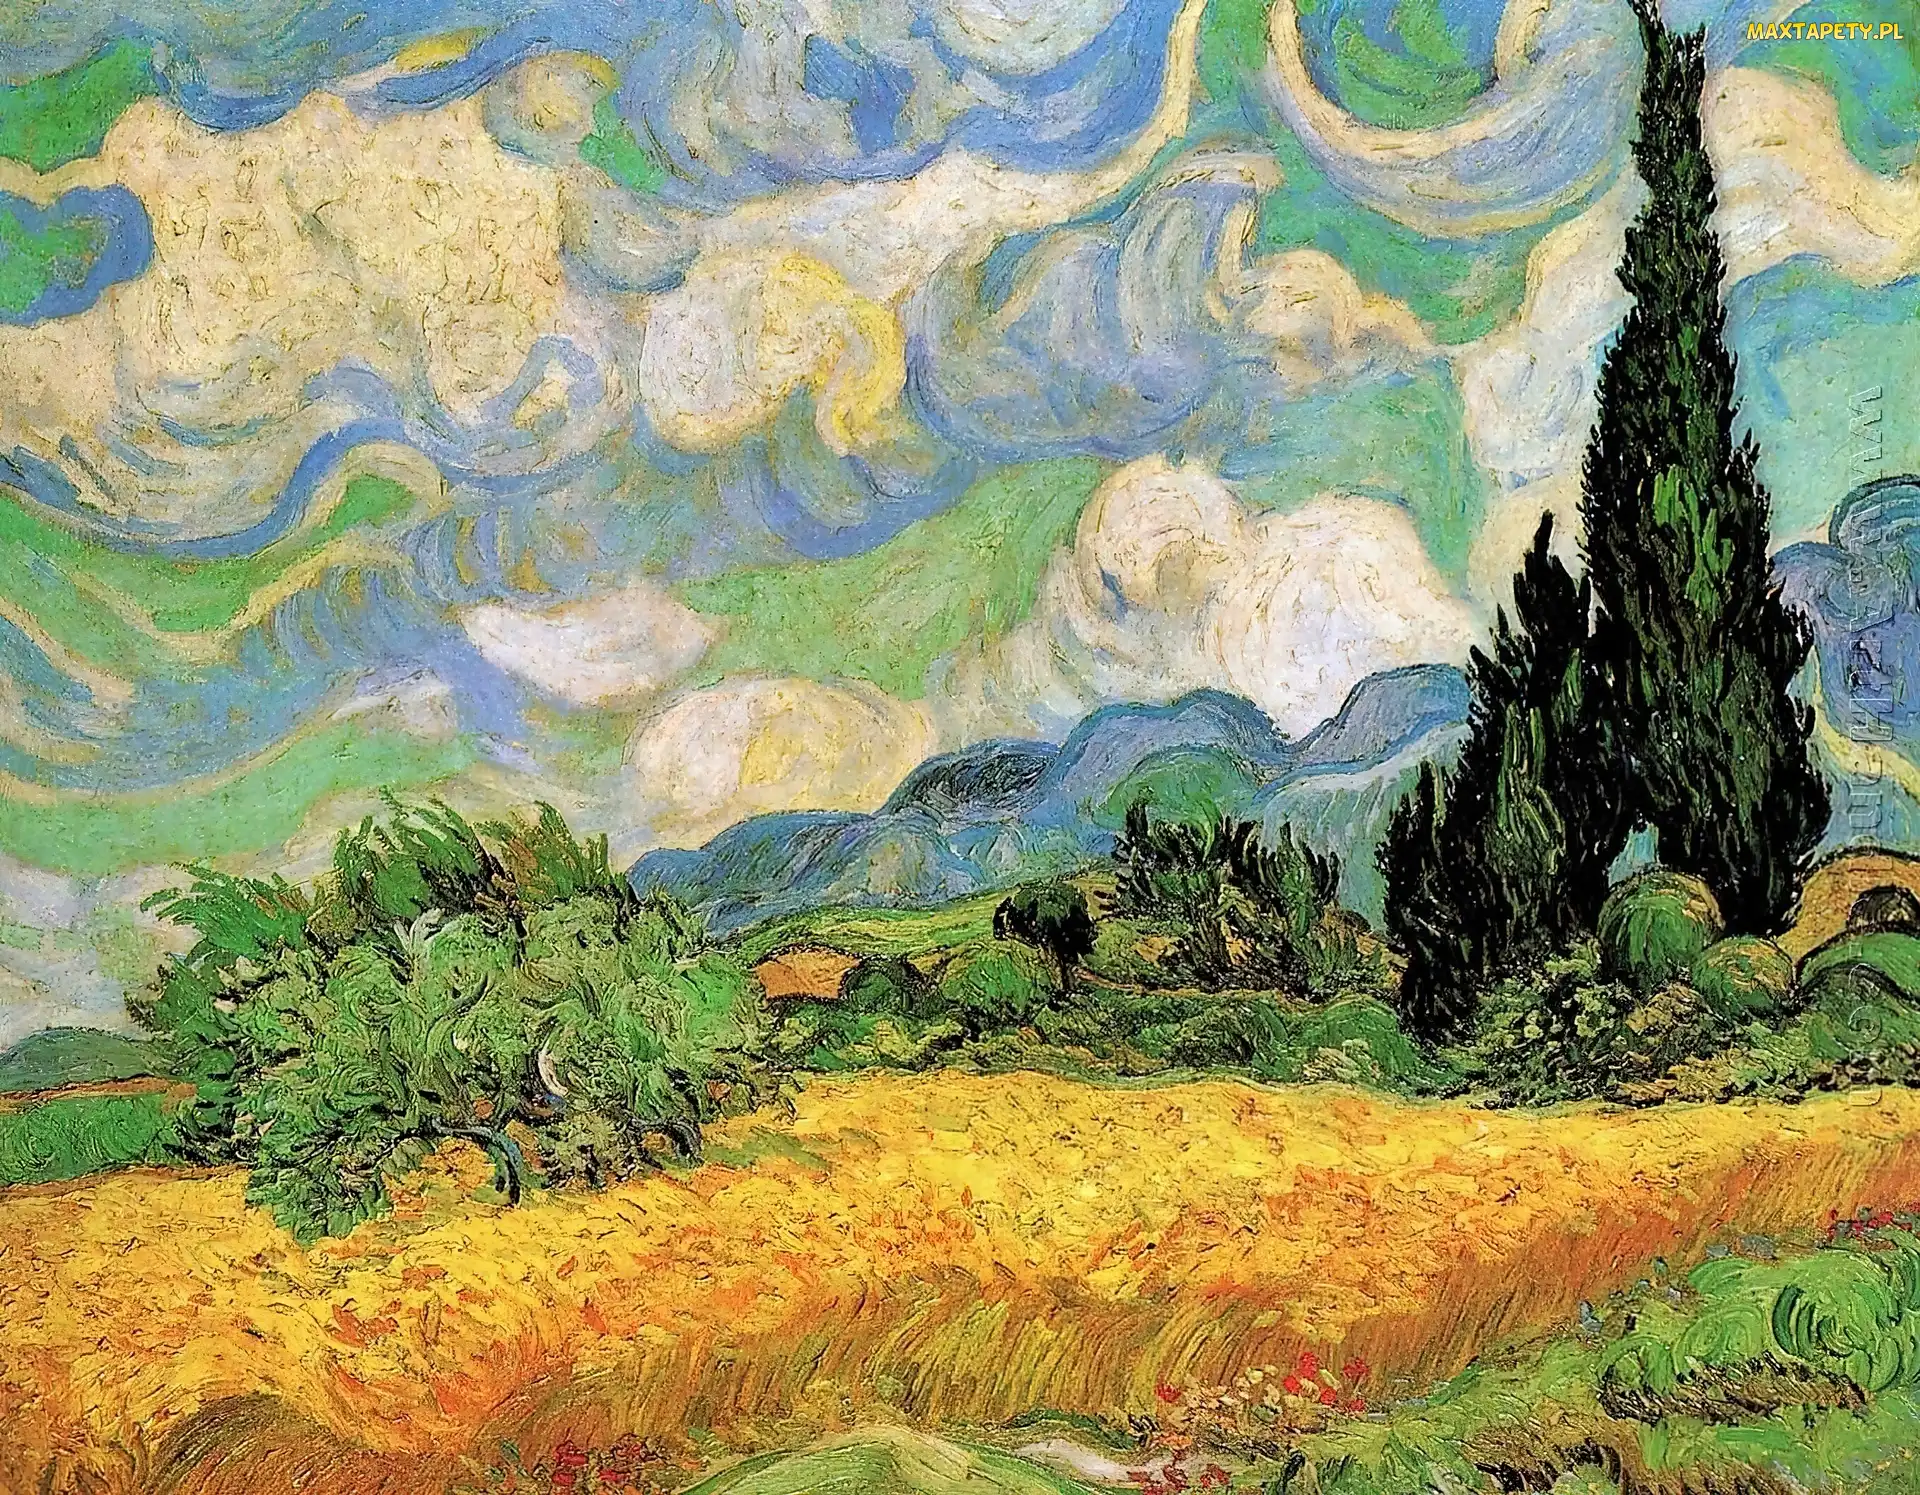 Vincent, Pole, Van Gogh